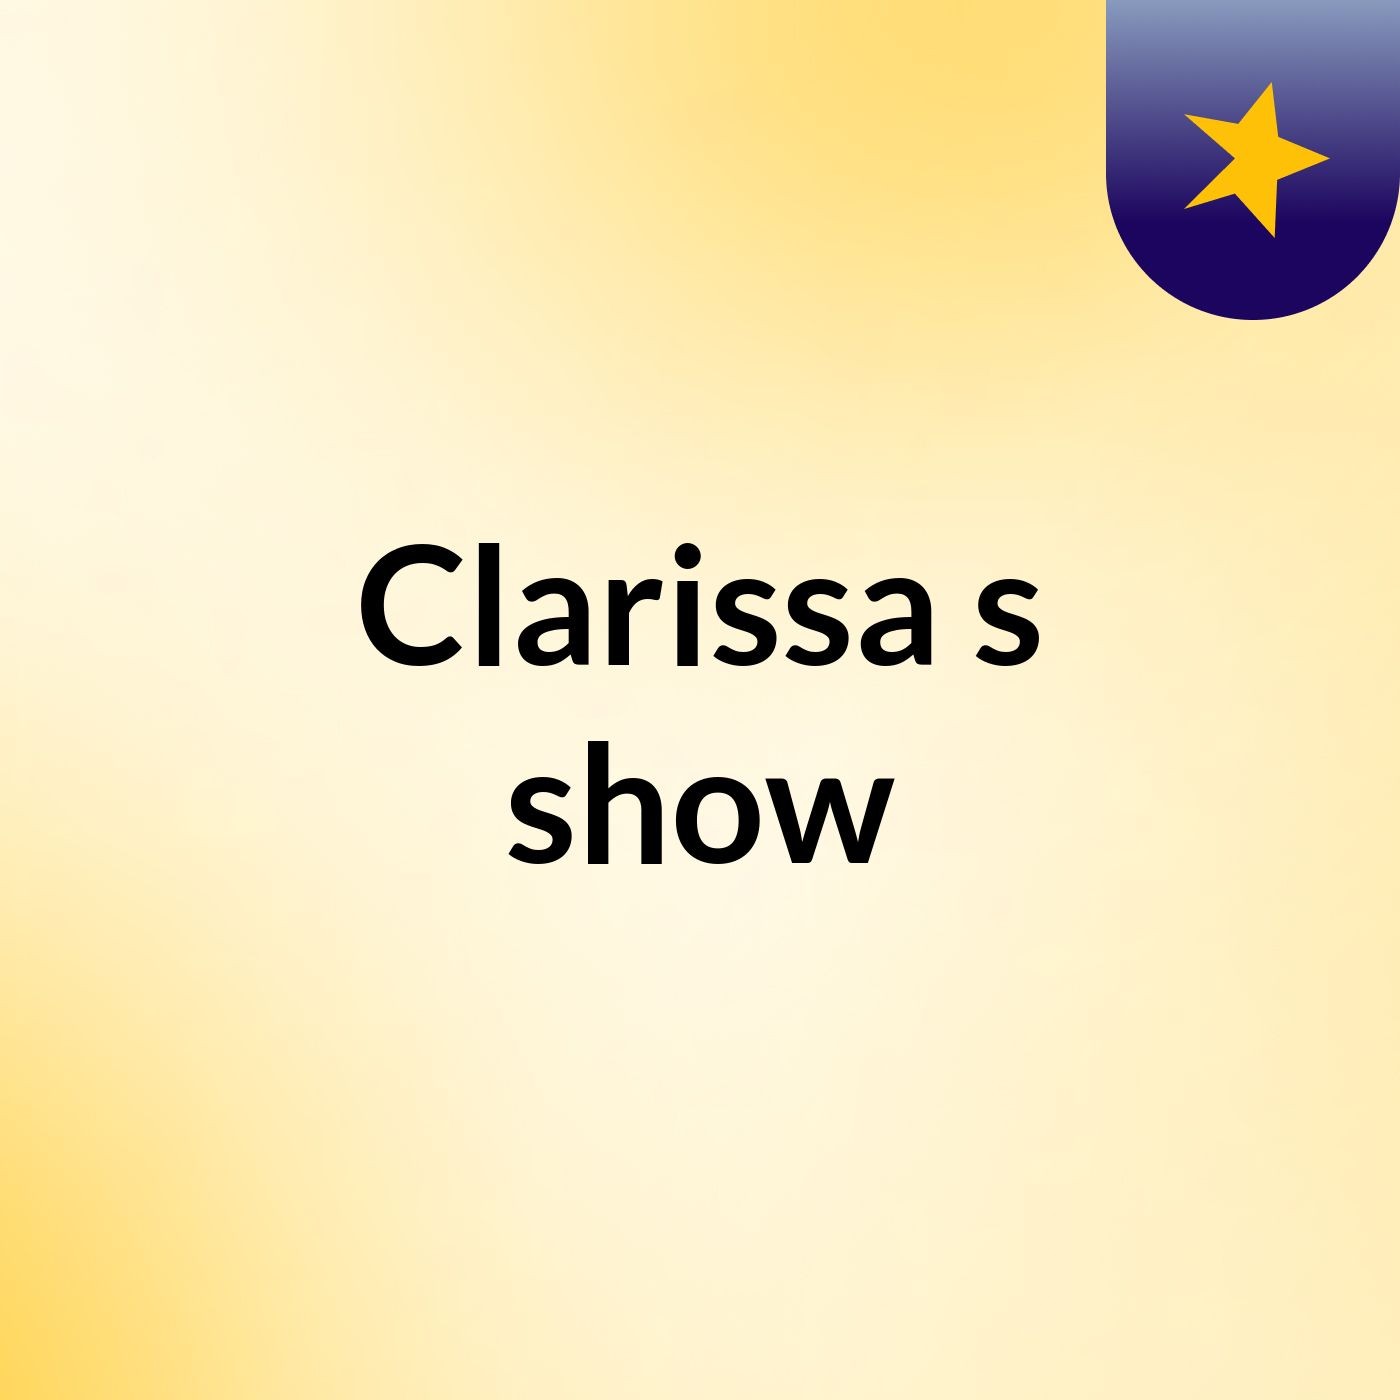 Clarissa's show